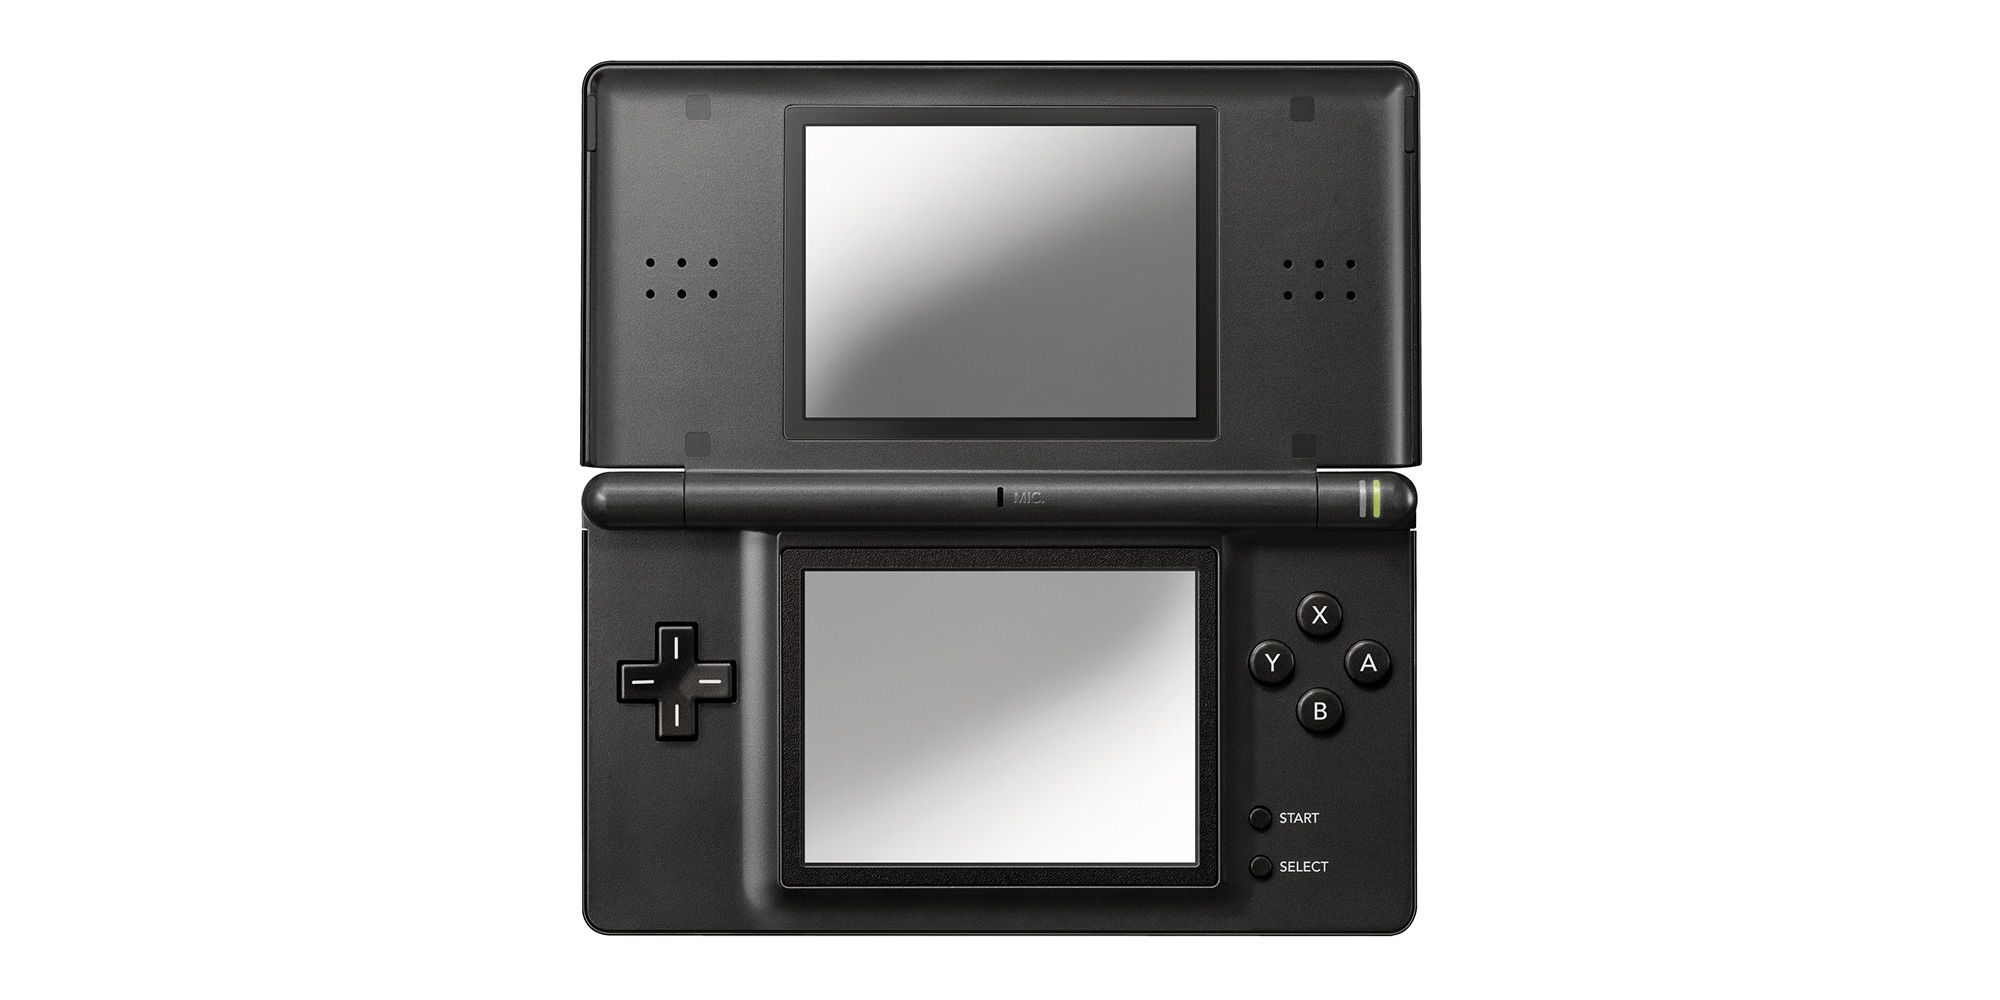 A Nintendo DS Lite console